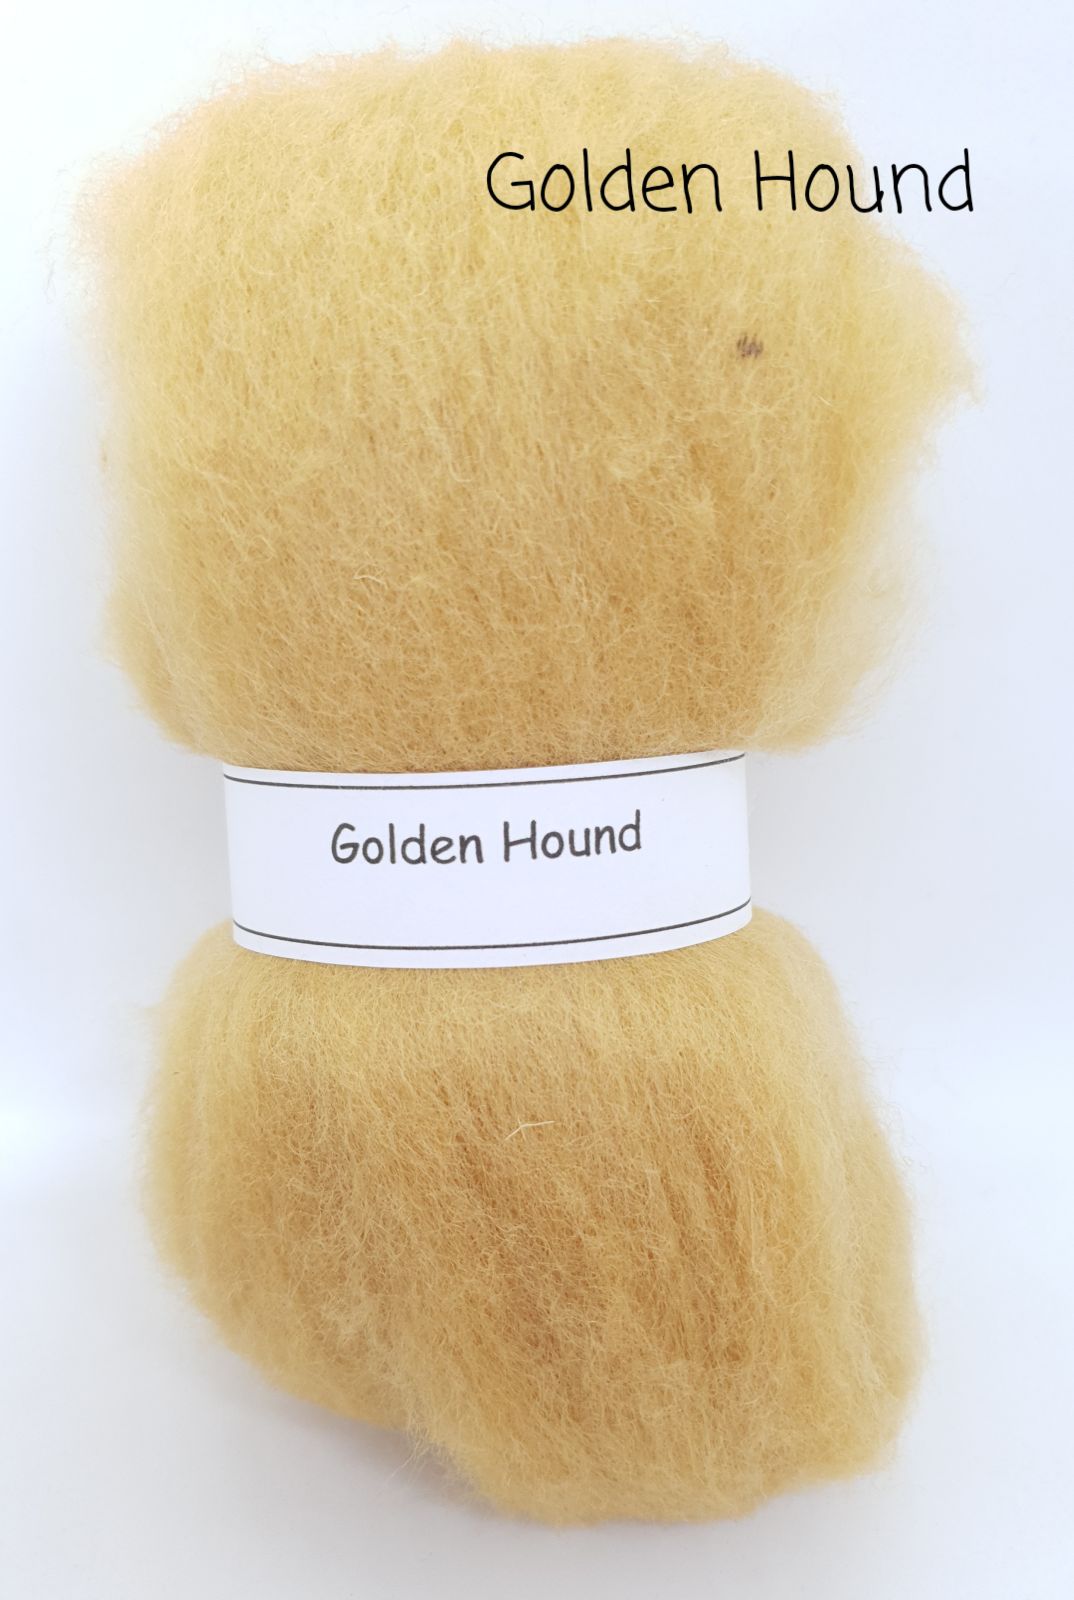 Golden Hound